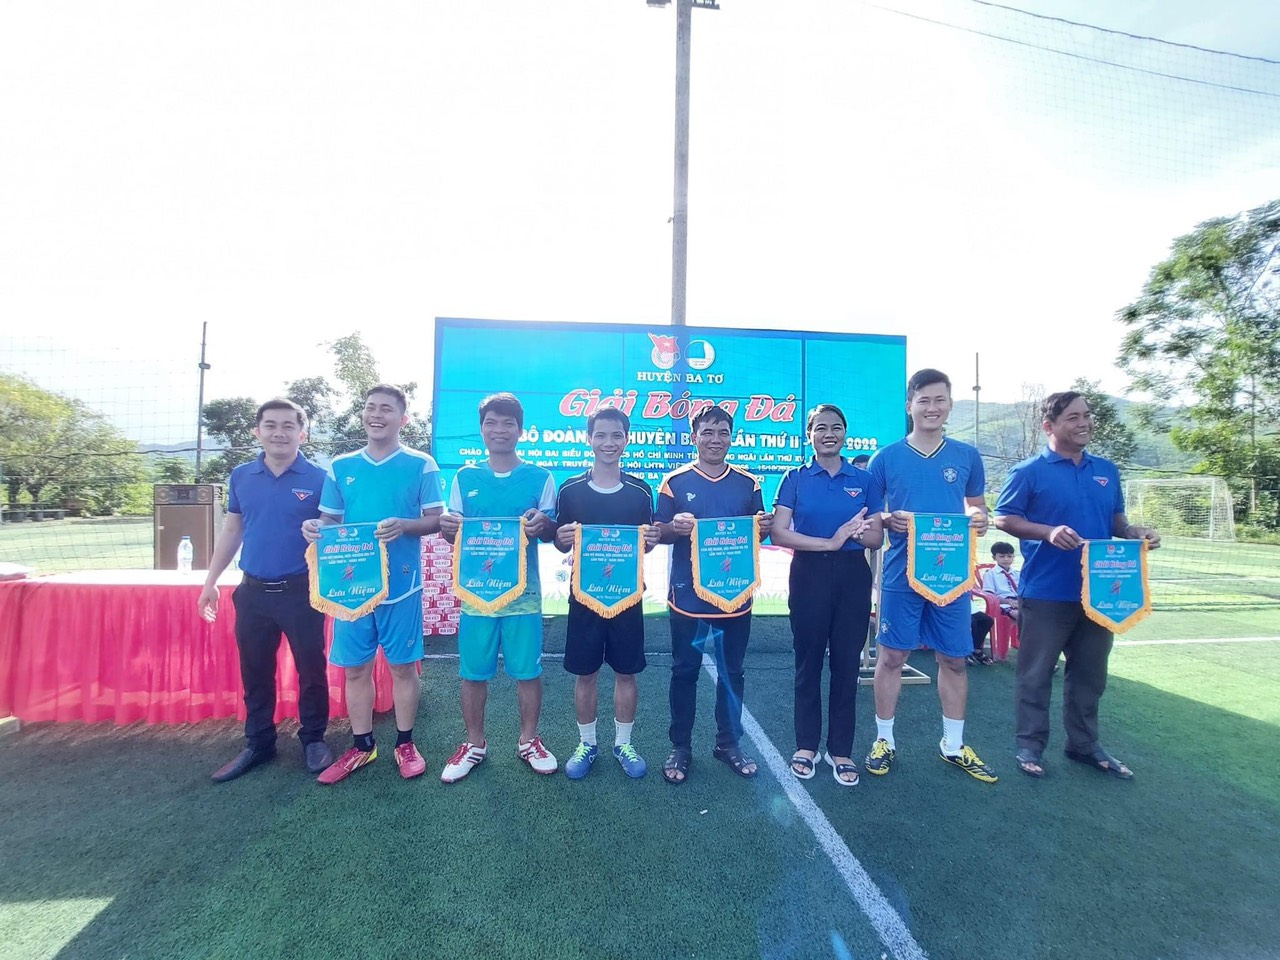 Đoàn huyện Ba Tơ khai mạc giải bóng đá cán bộ Đoàn, Hội năm 2022